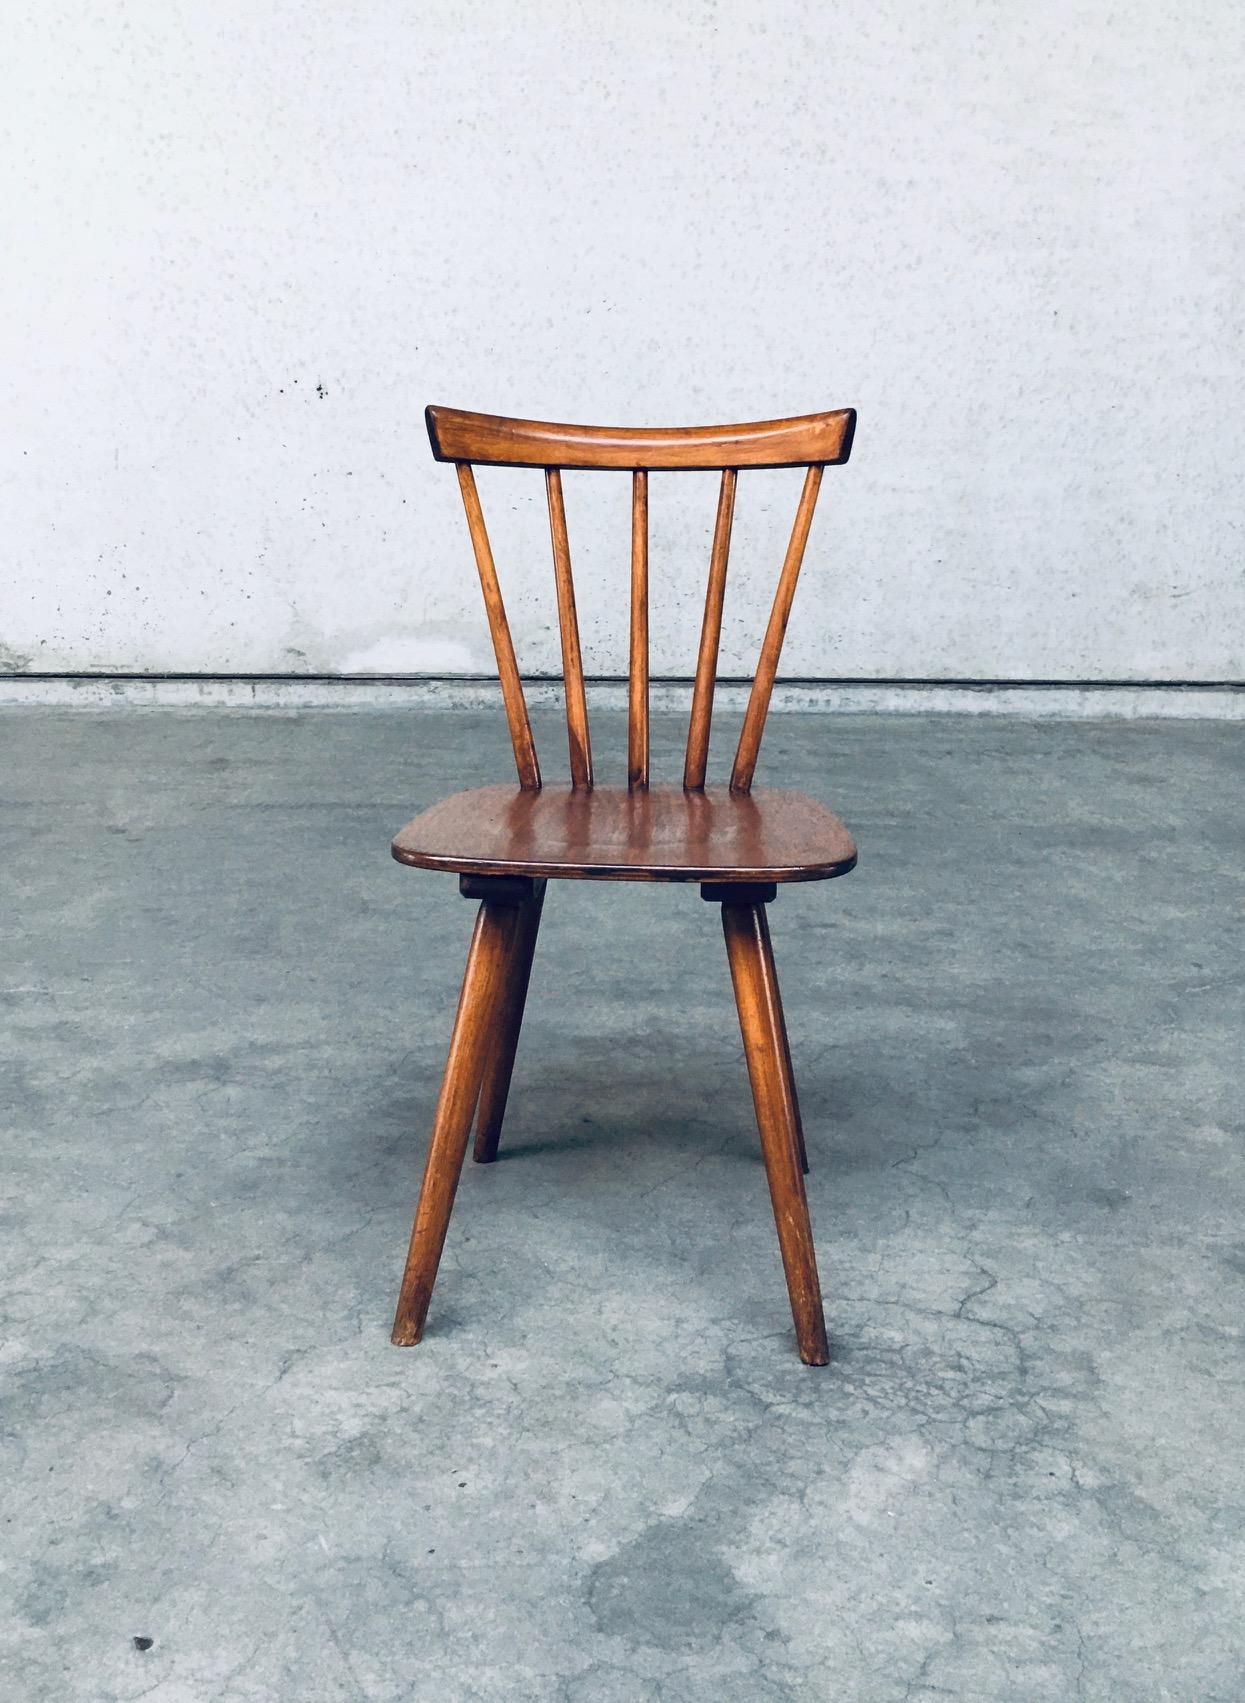 Beech Midcentury Design Spindle Back Café 8 Chairs by Vervoort, Tilburg Netherlands